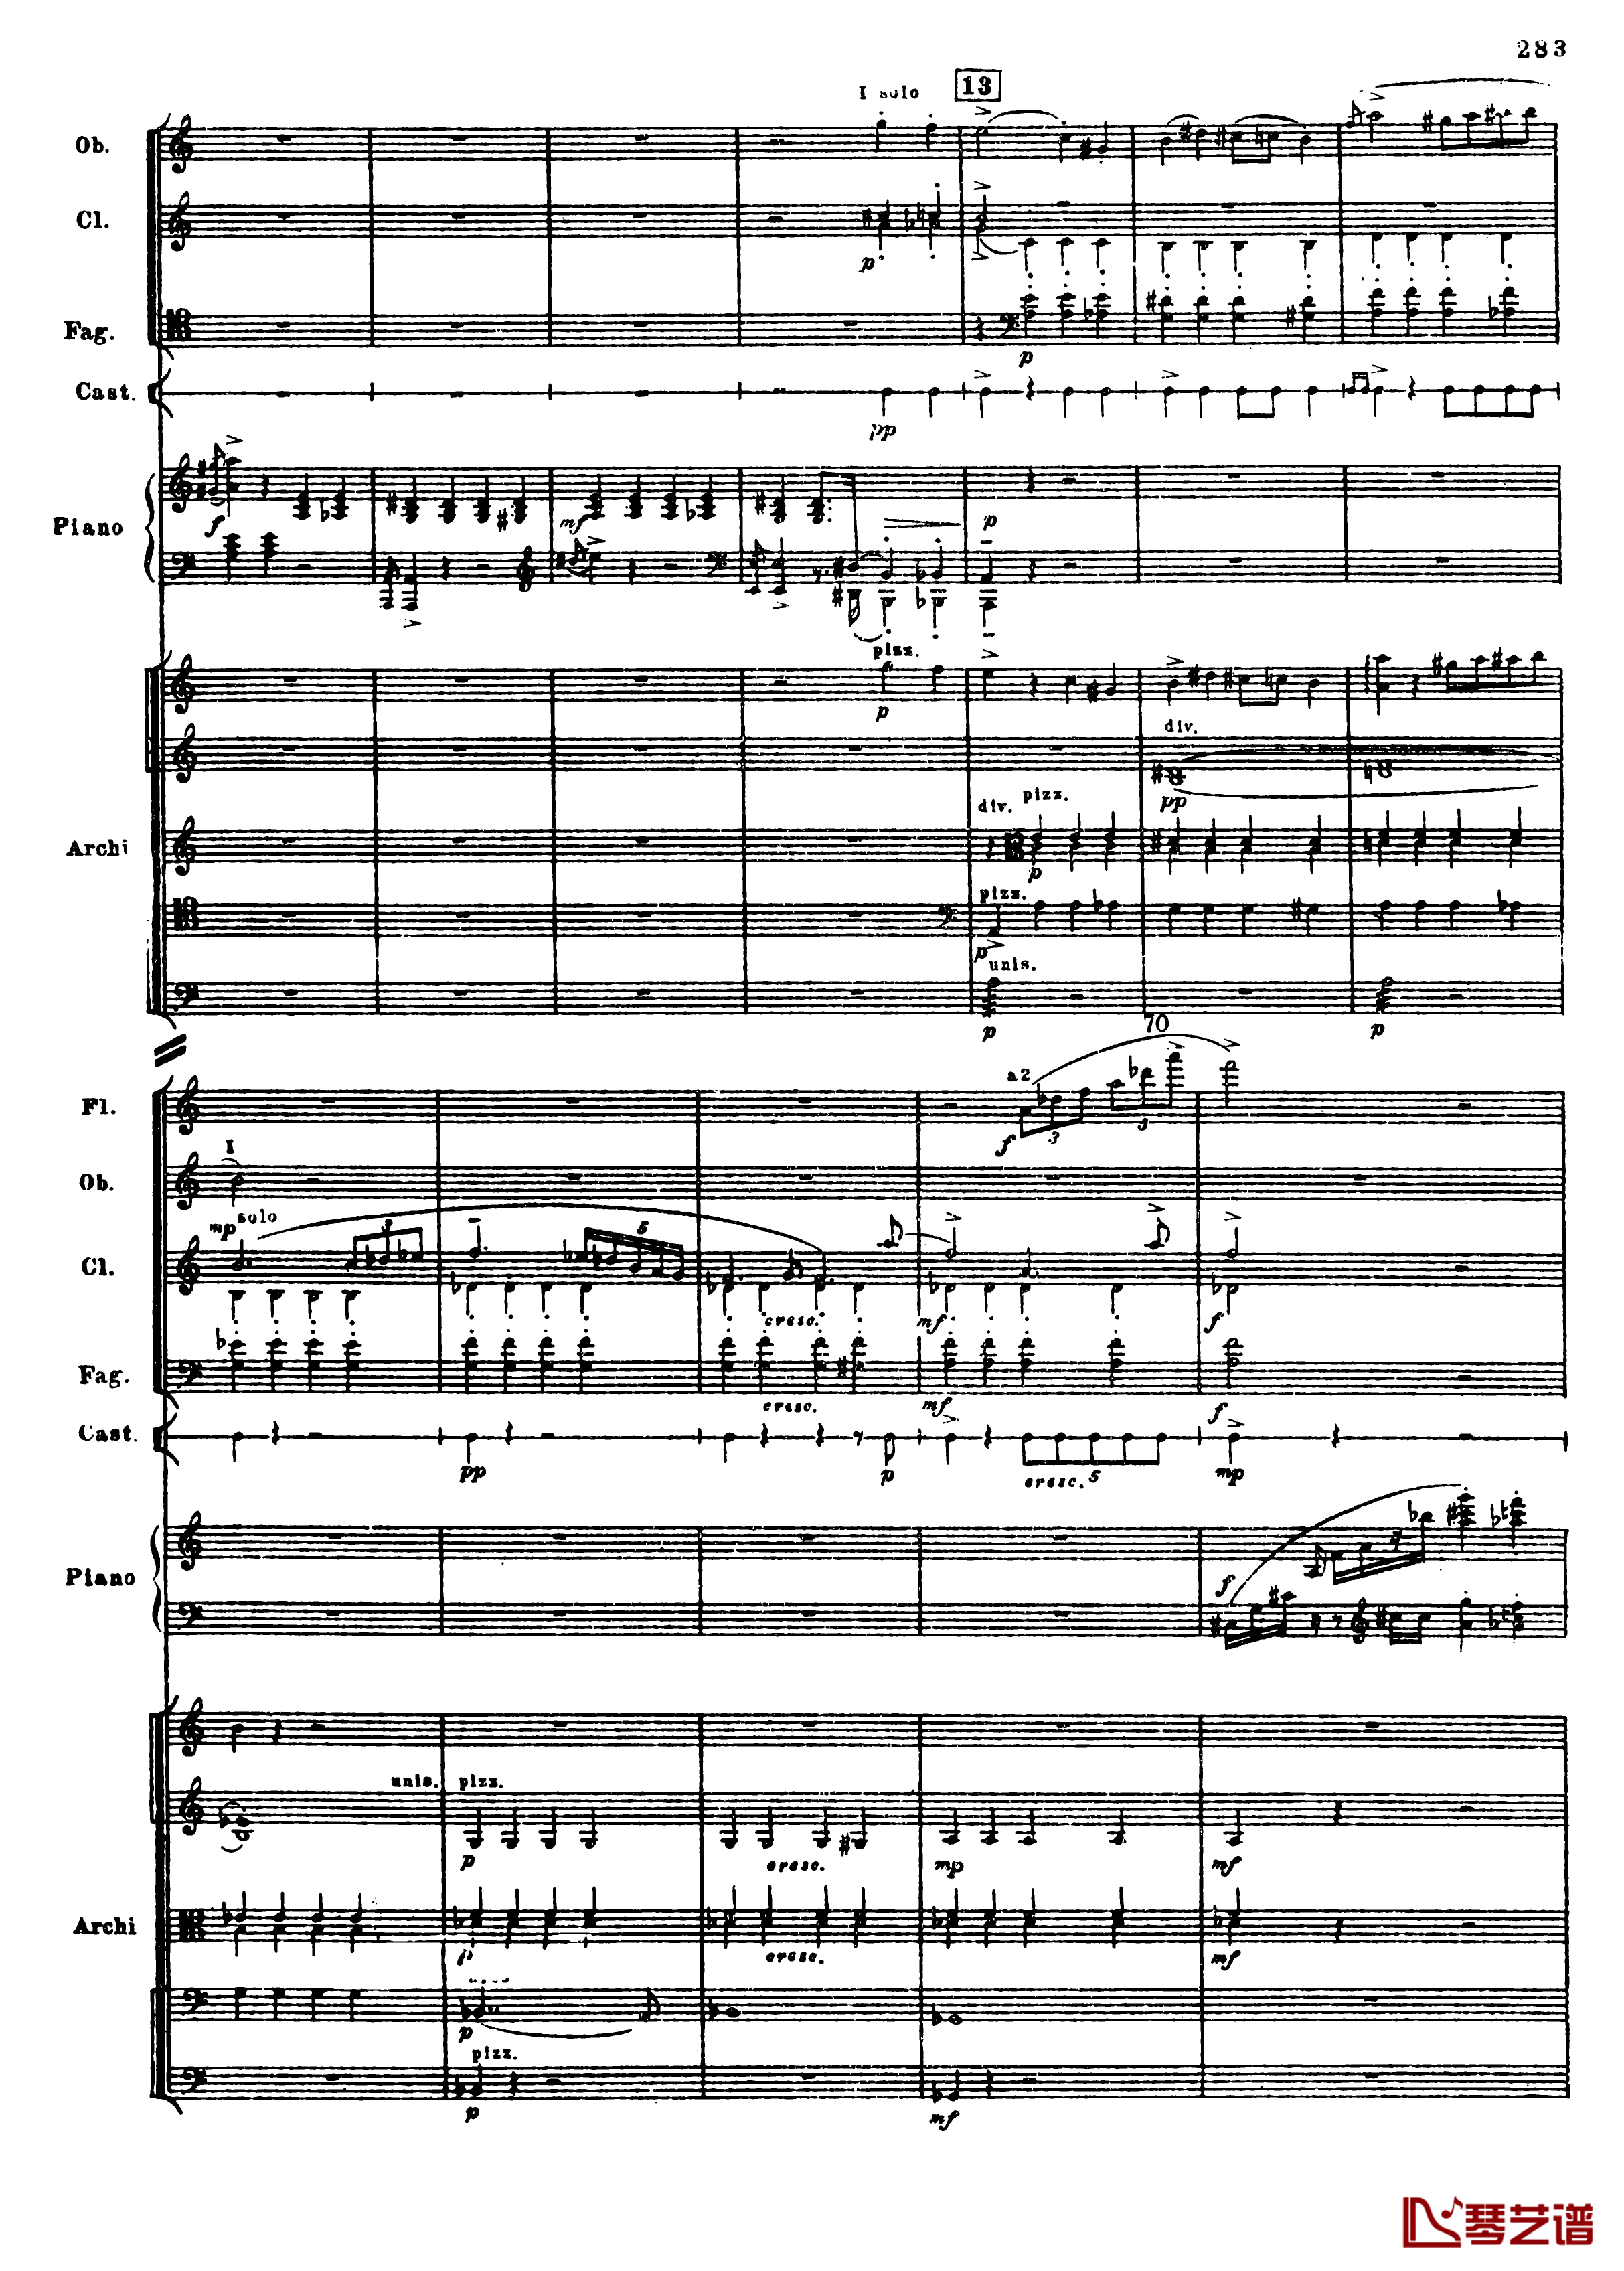 普罗科菲耶夫第三钢琴协奏曲钢琴谱-总谱-普罗科非耶夫15